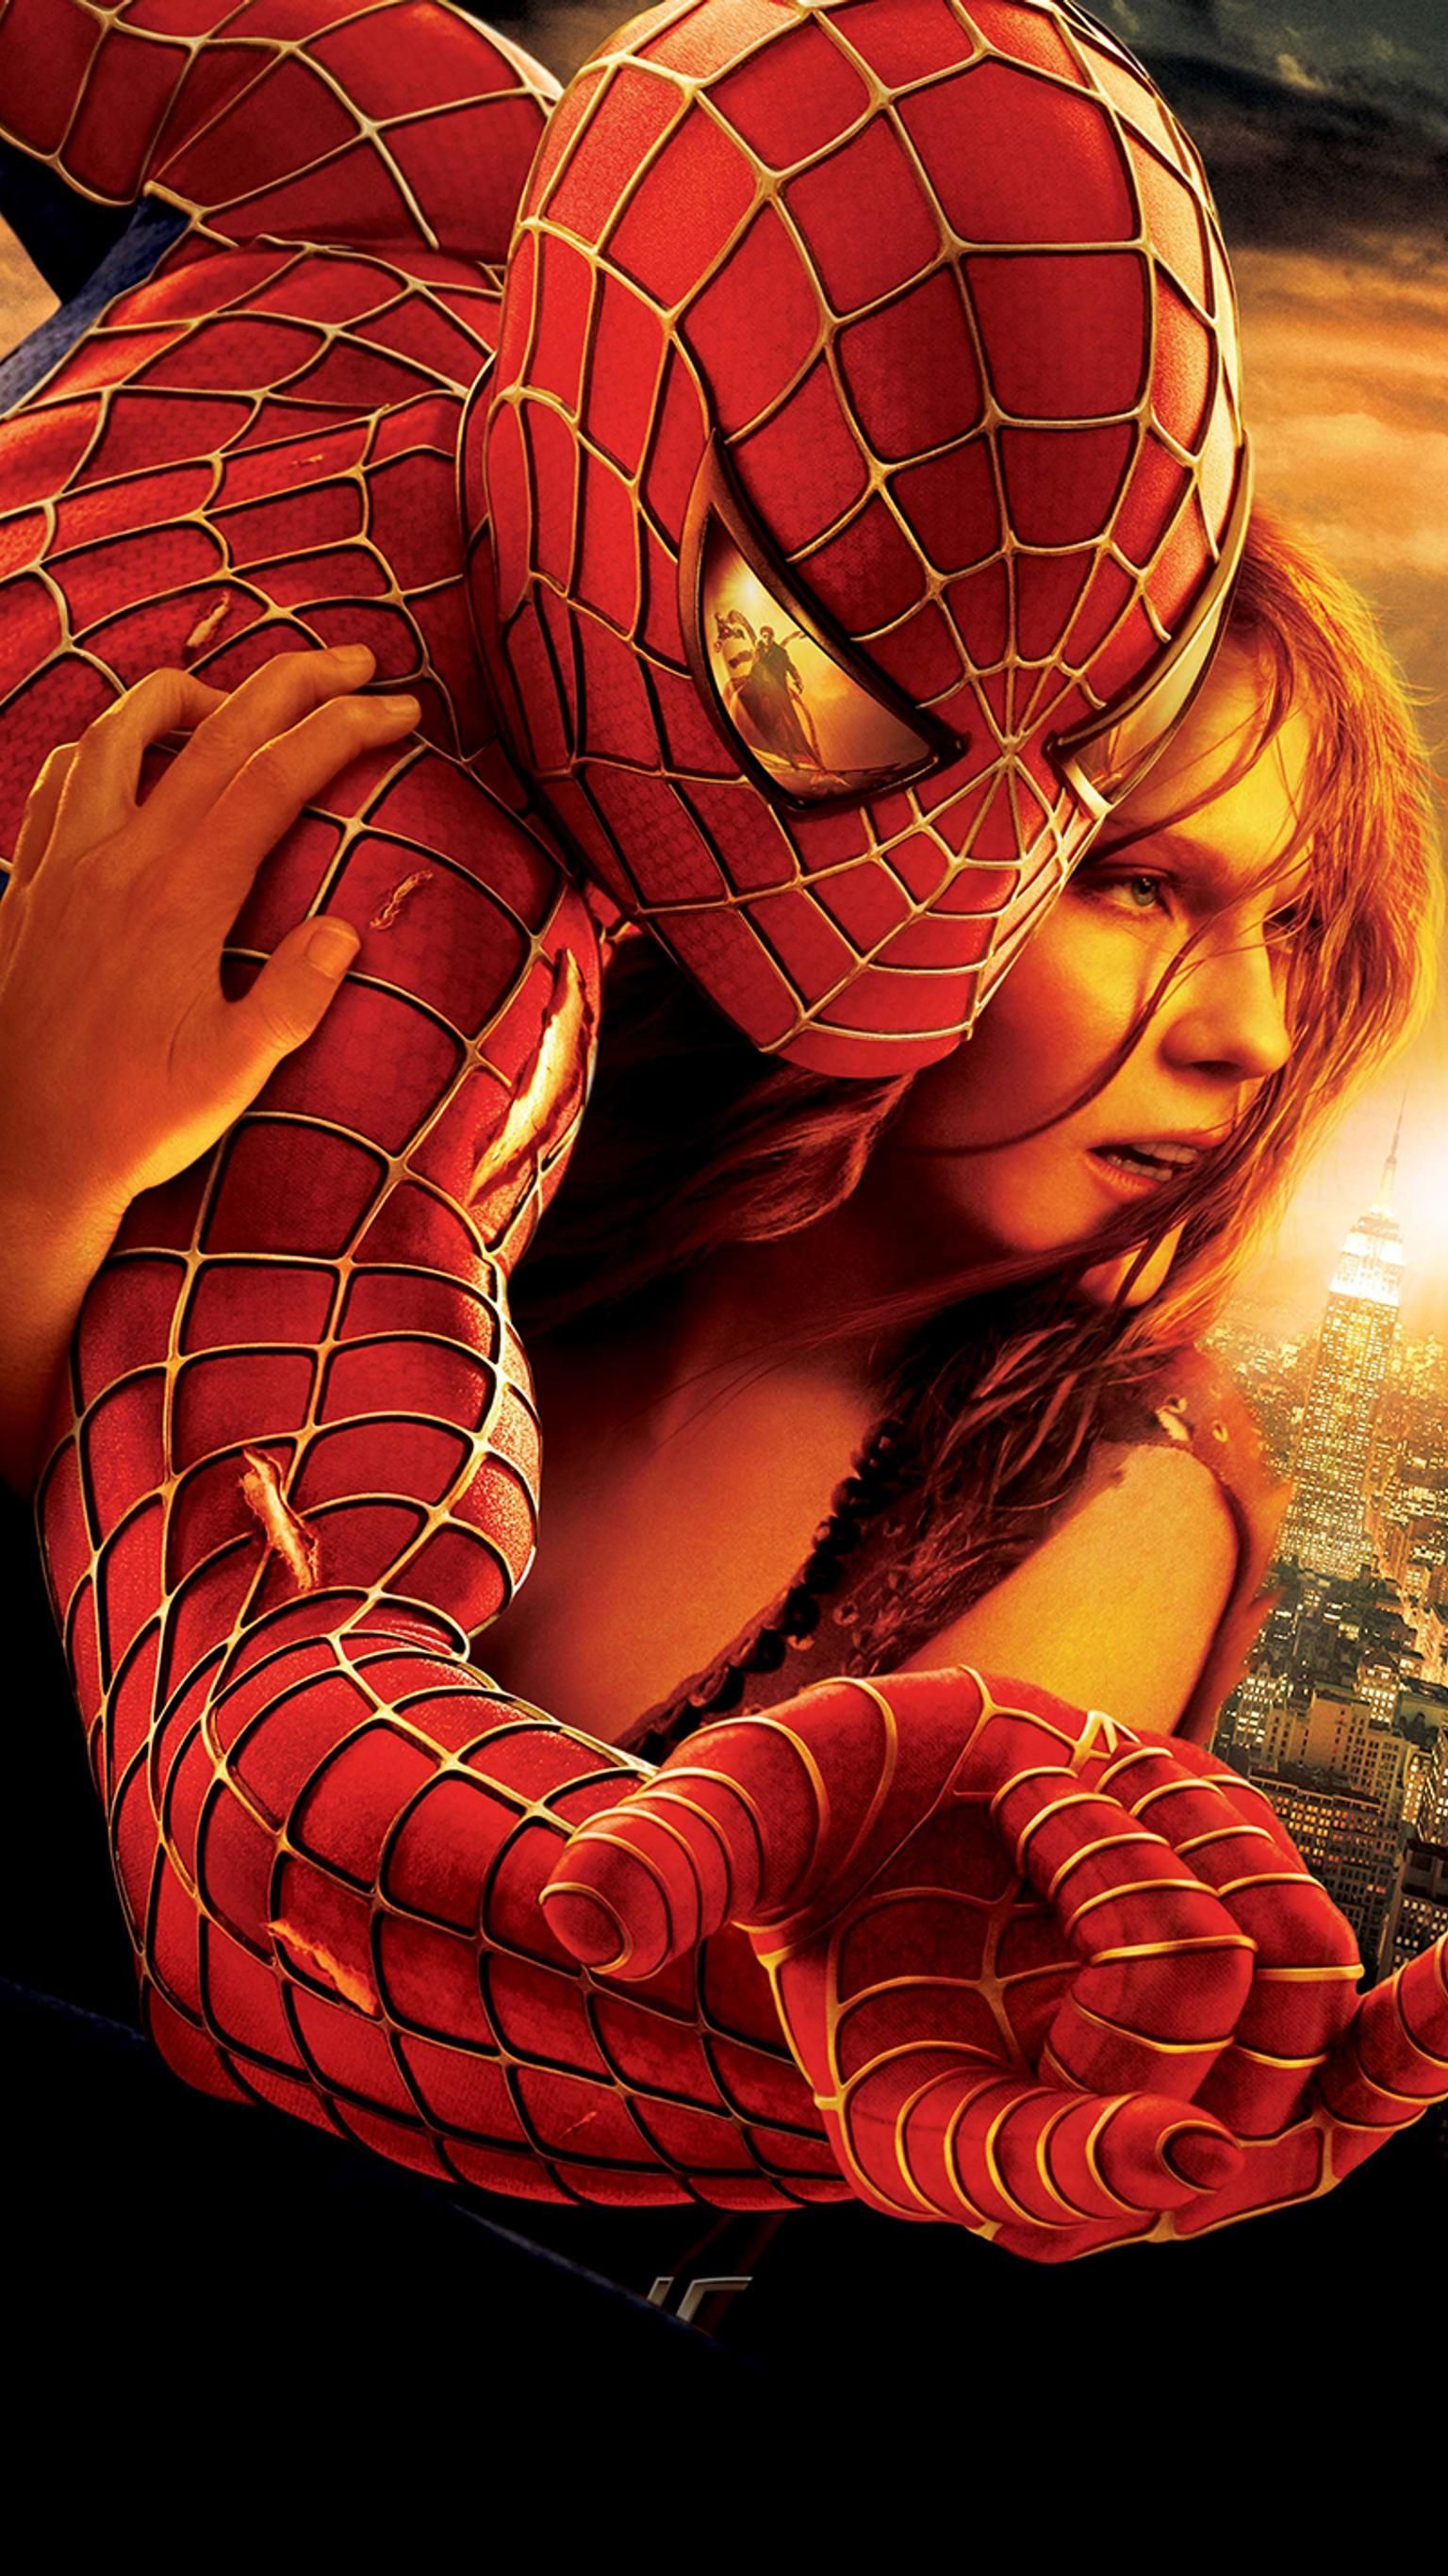 Spider Man 2 (2004) Phone Wallpaper. Spiderman Movie, Spiderman